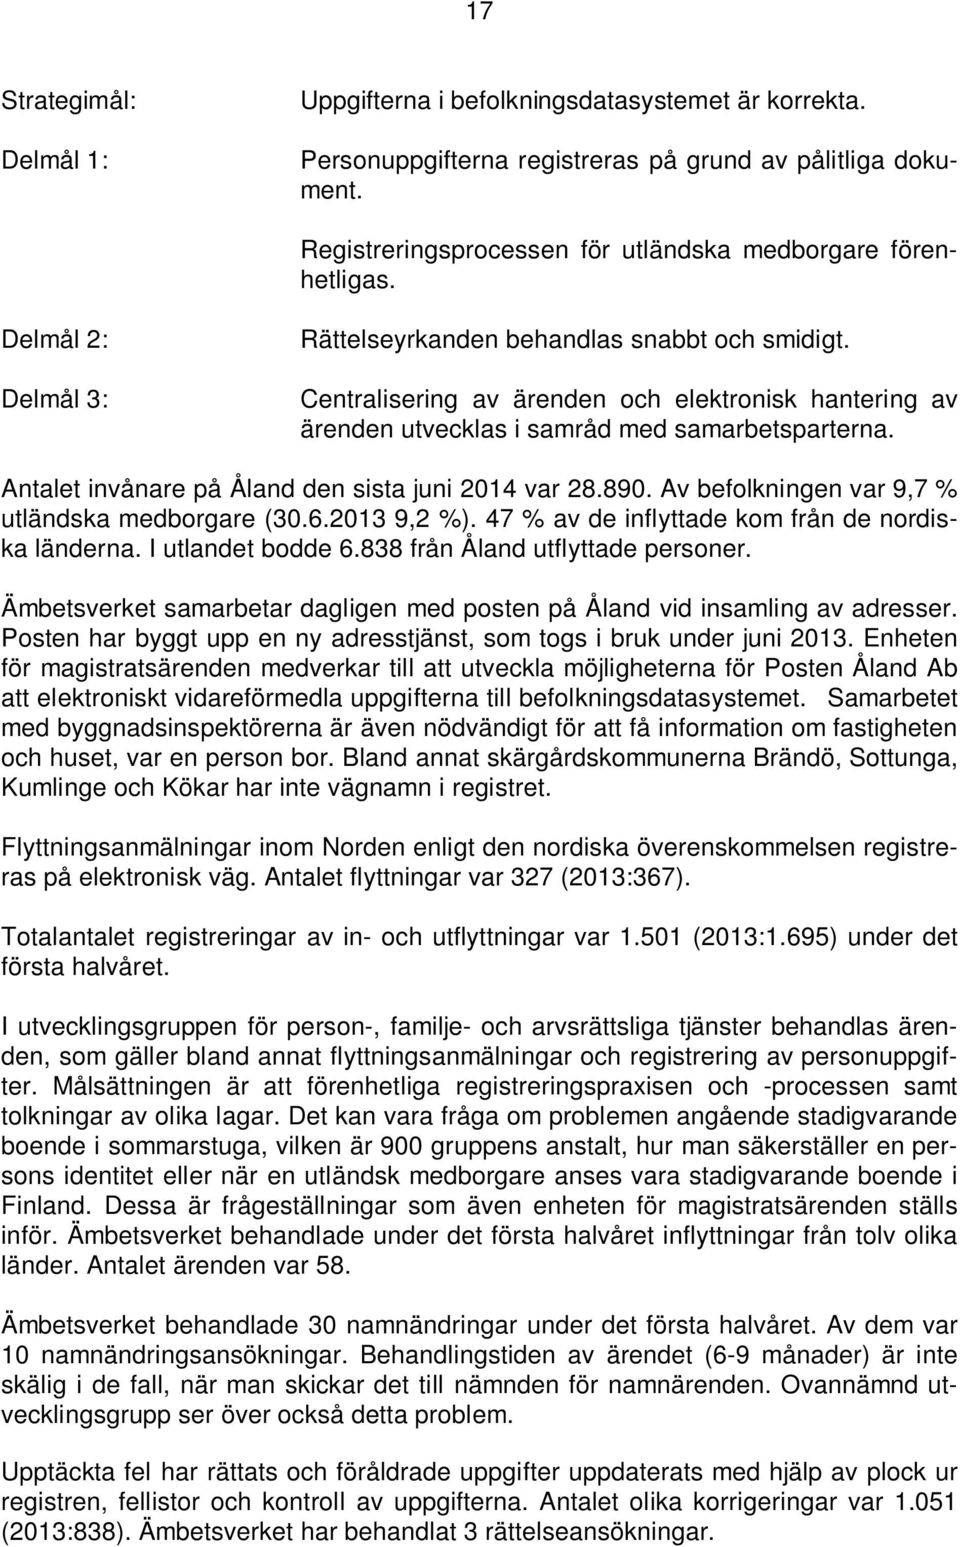 Antalet invånare på Åland den sista juni 2014 var 28.890. Av befolkningen var 9,7 % utländska medborgare (30.6.2013 9,2 %). 47 % av de inflyttade kom från de nordiska länderna. I utlandet bodde 6.